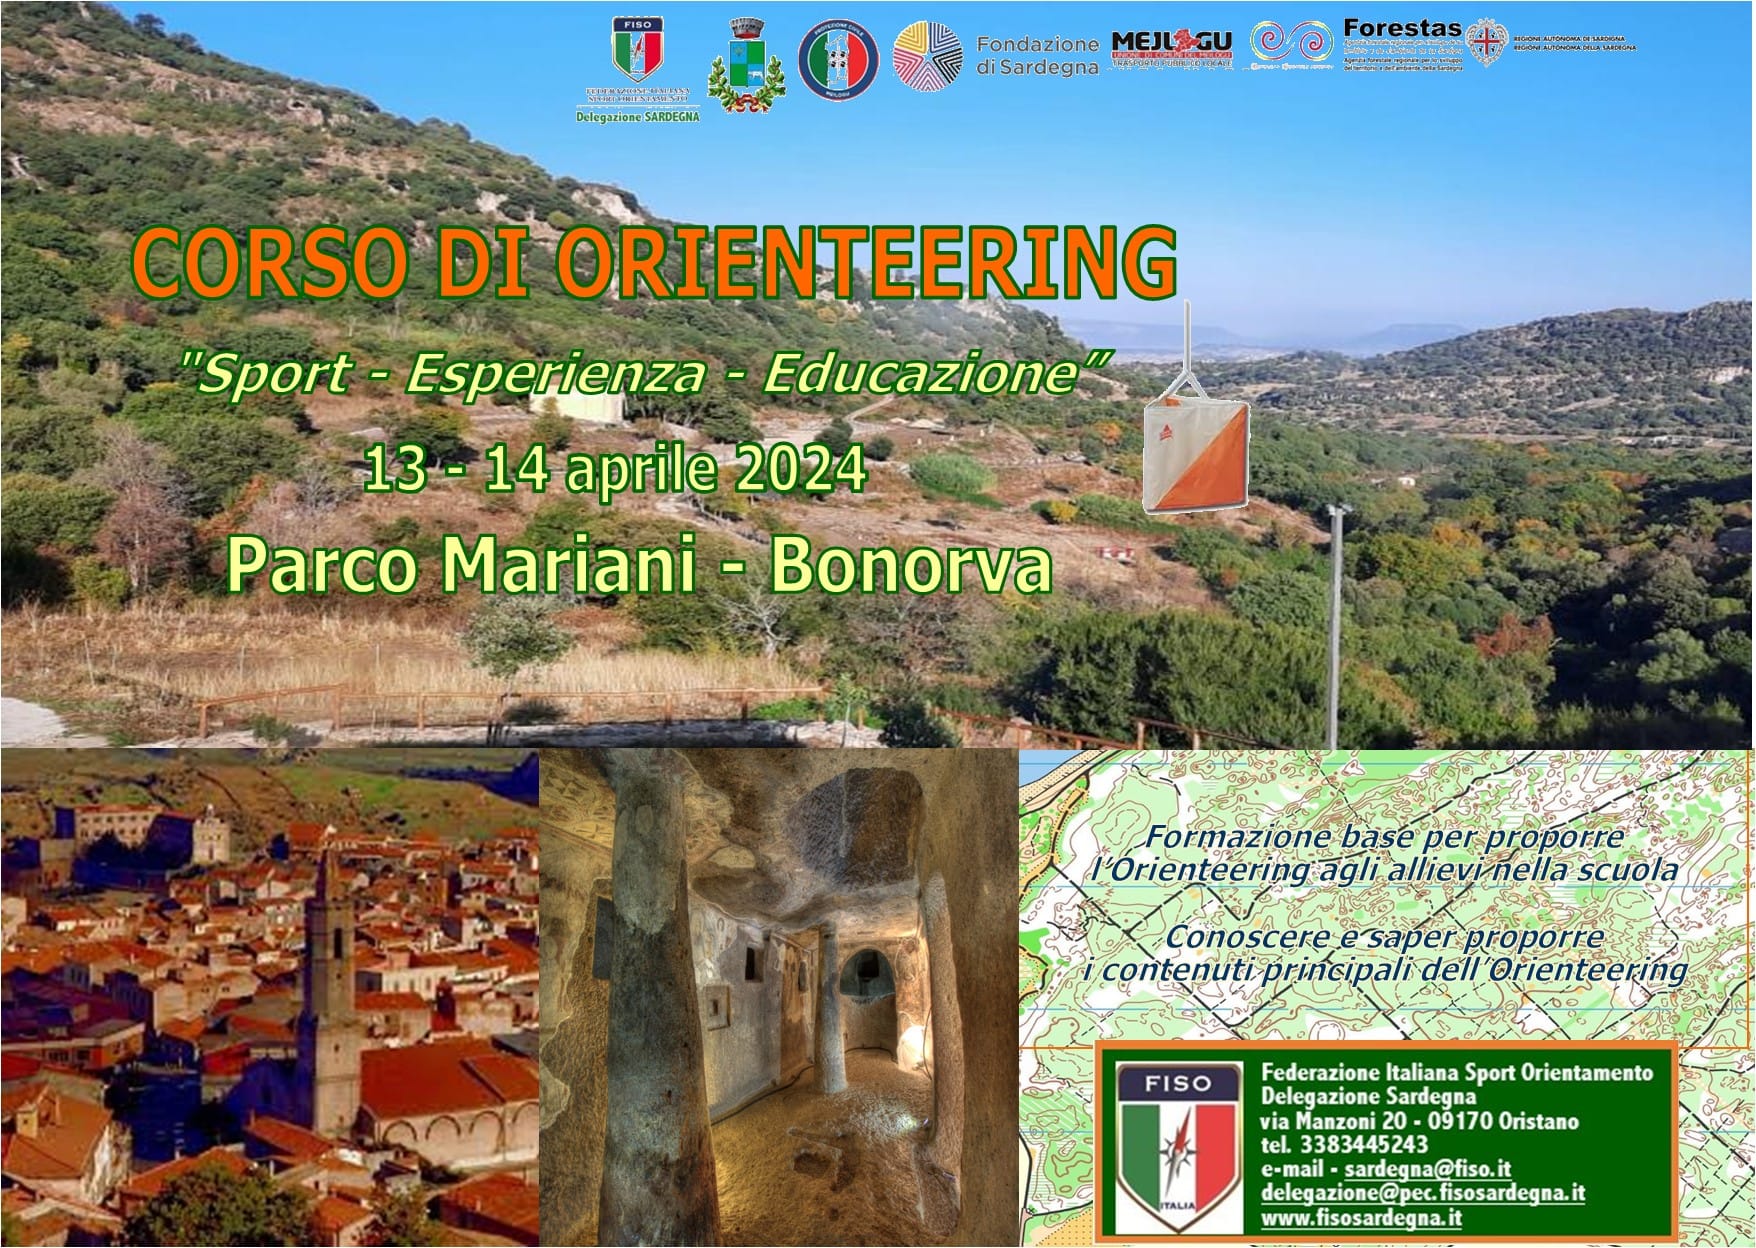 Corso di formazione di Orienteering - 13-14 aprile Parco Mariani  - Bonorva (SS)